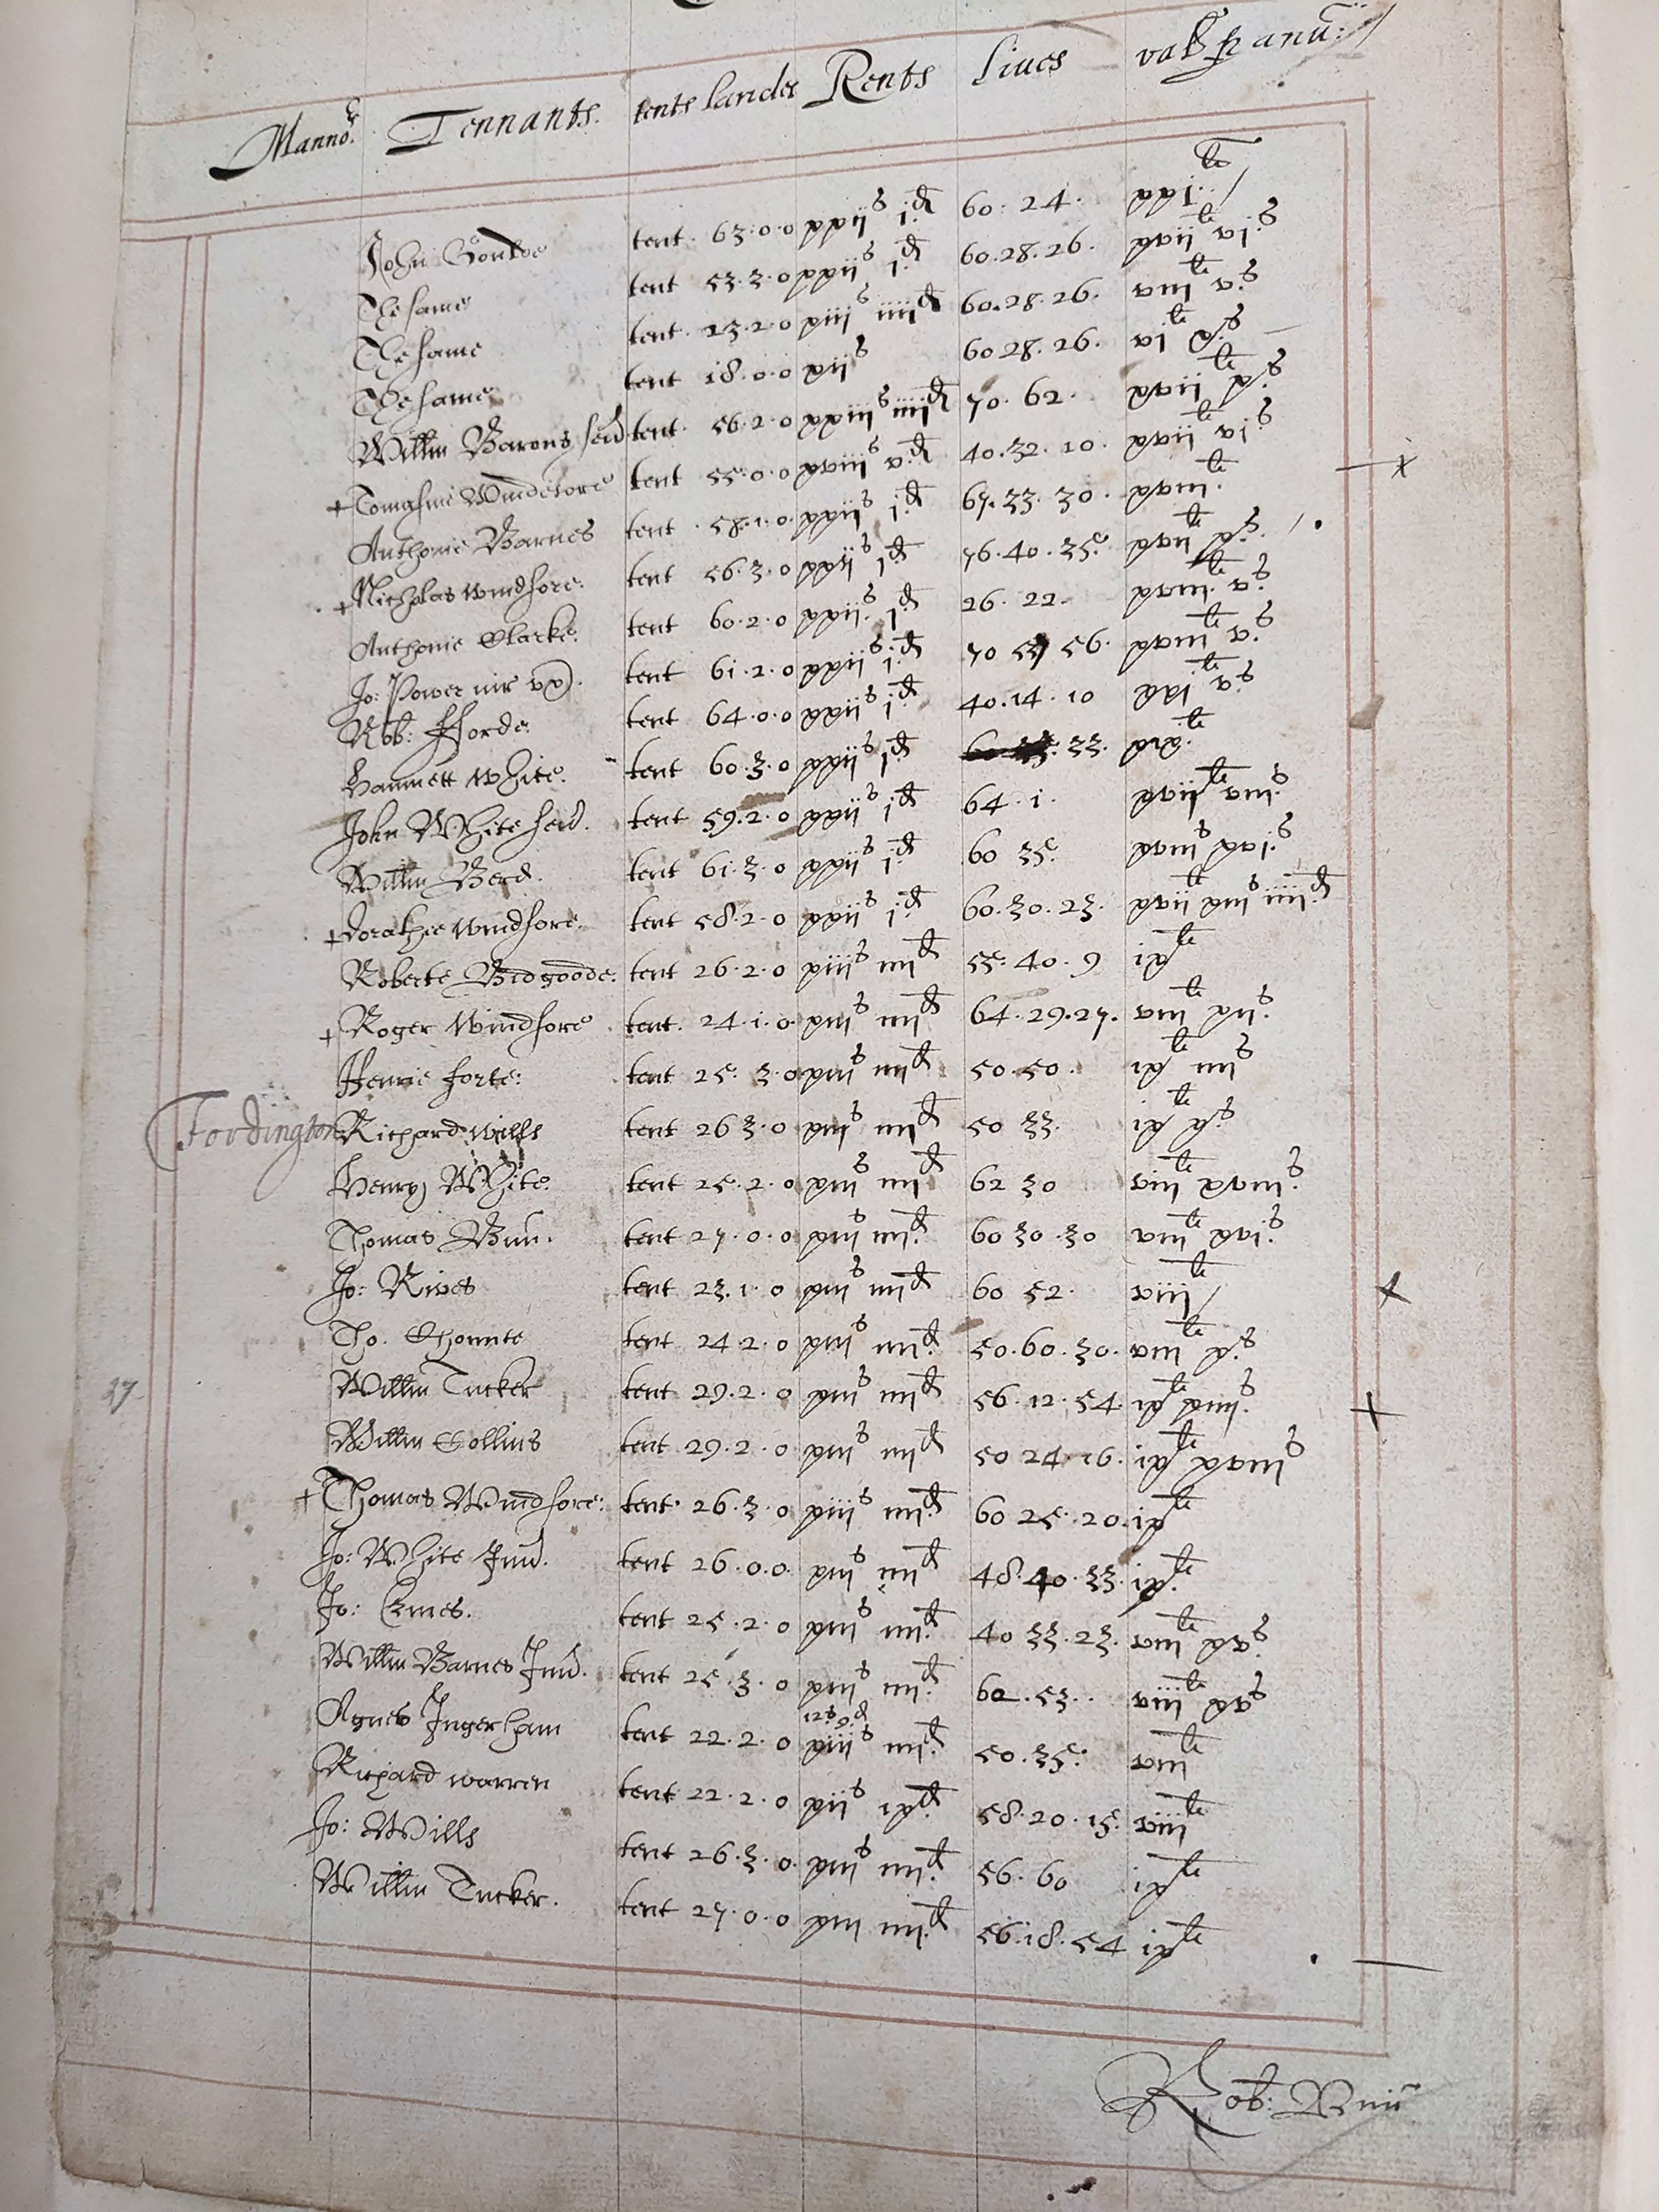 Folio 27a